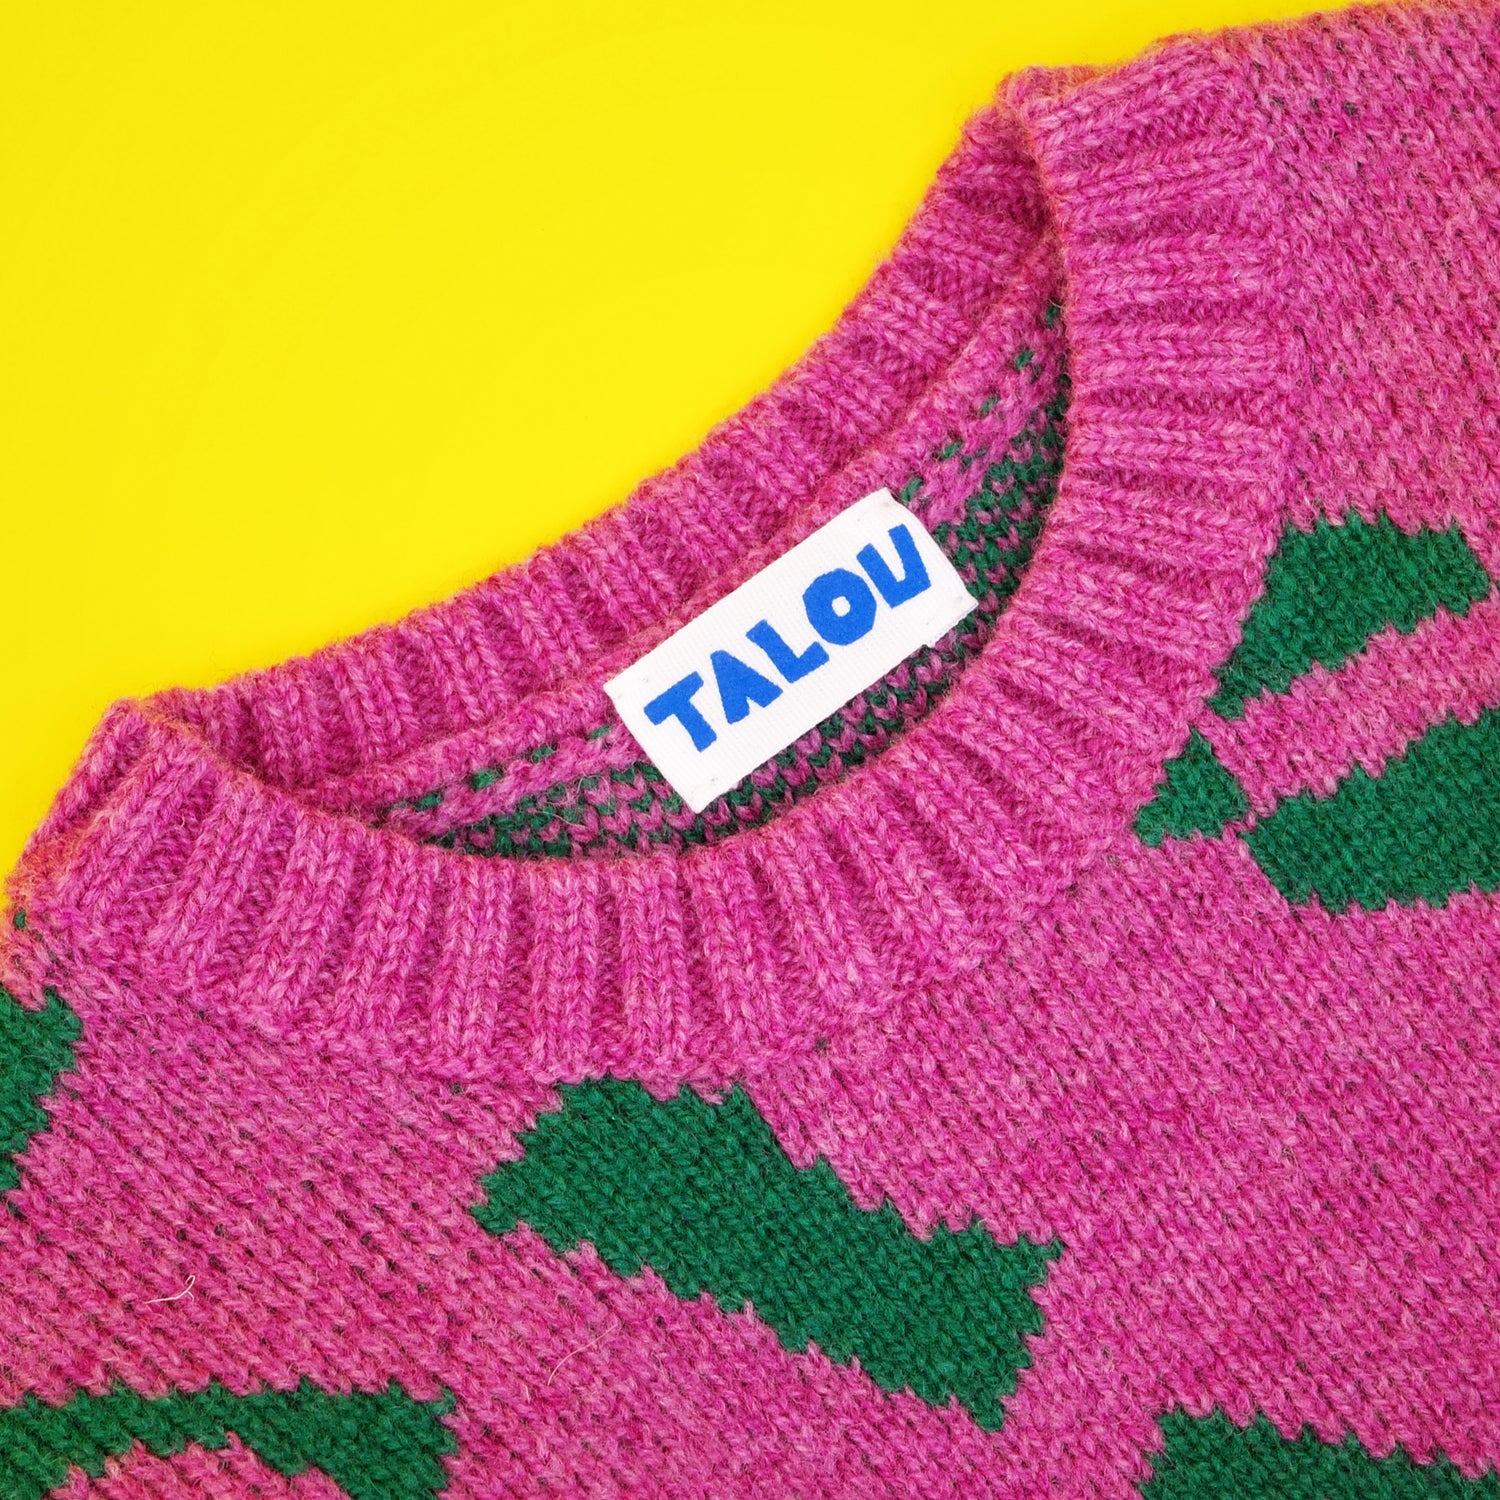 Neckline of children's jumper in pink and green wool jacqaurd.